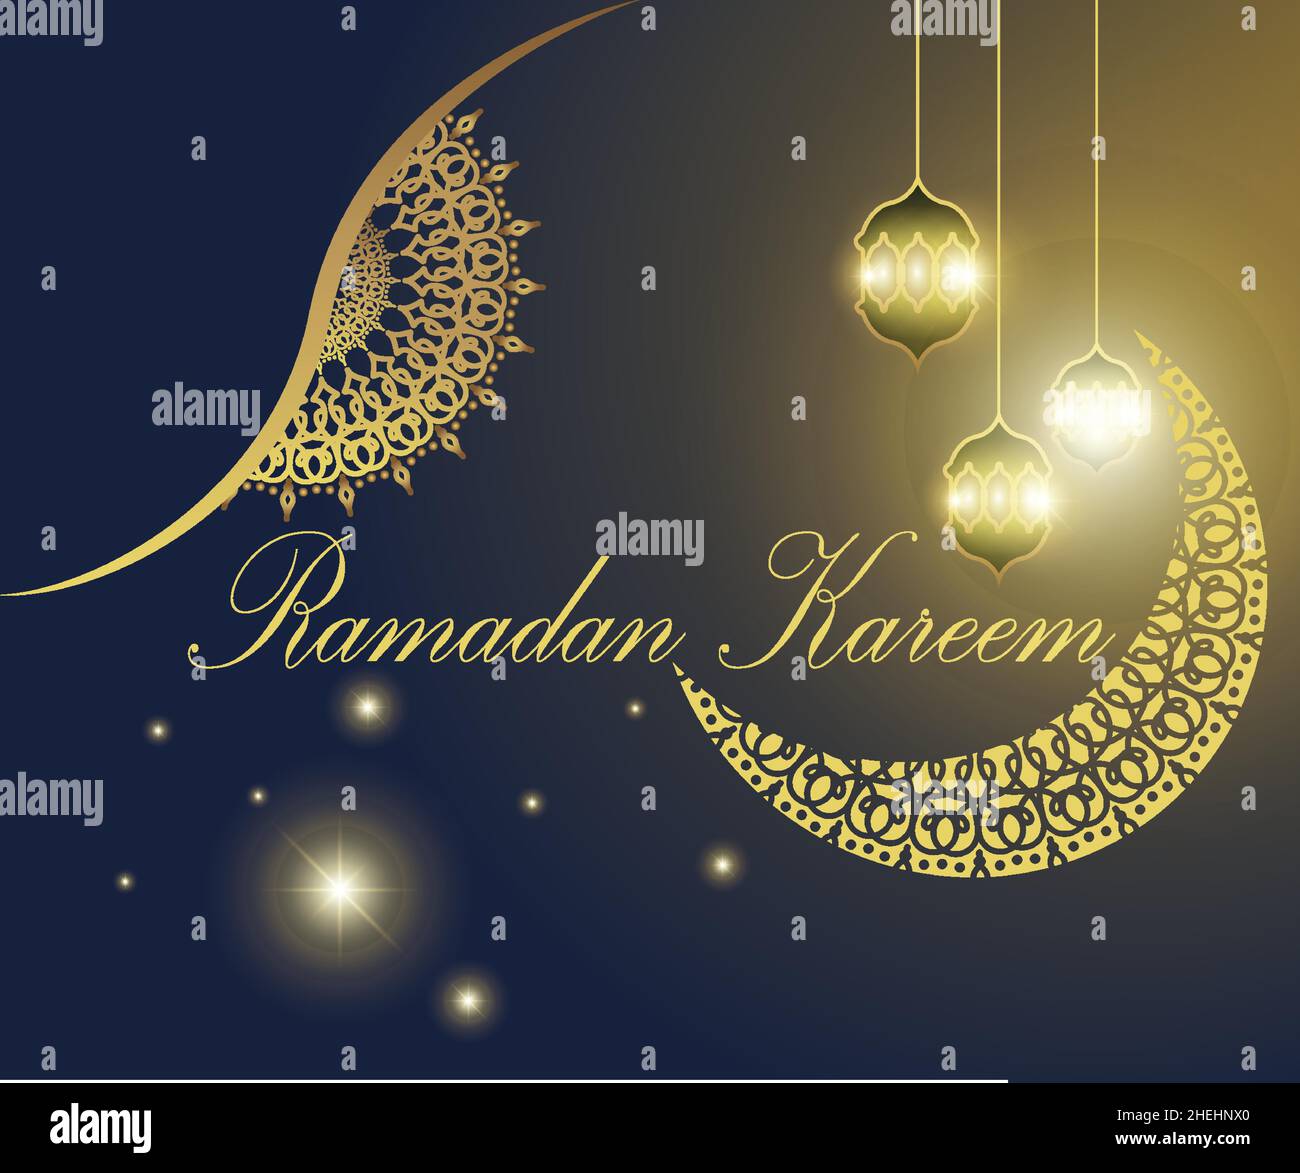 Illustration d'affiche de Ramadan, motif d'ornement de lune, lustre, avec un effet de lumière dorée semble luxueux, bon pour les bannières, les affiches, les médias promotionnels Illustration de Vecteur